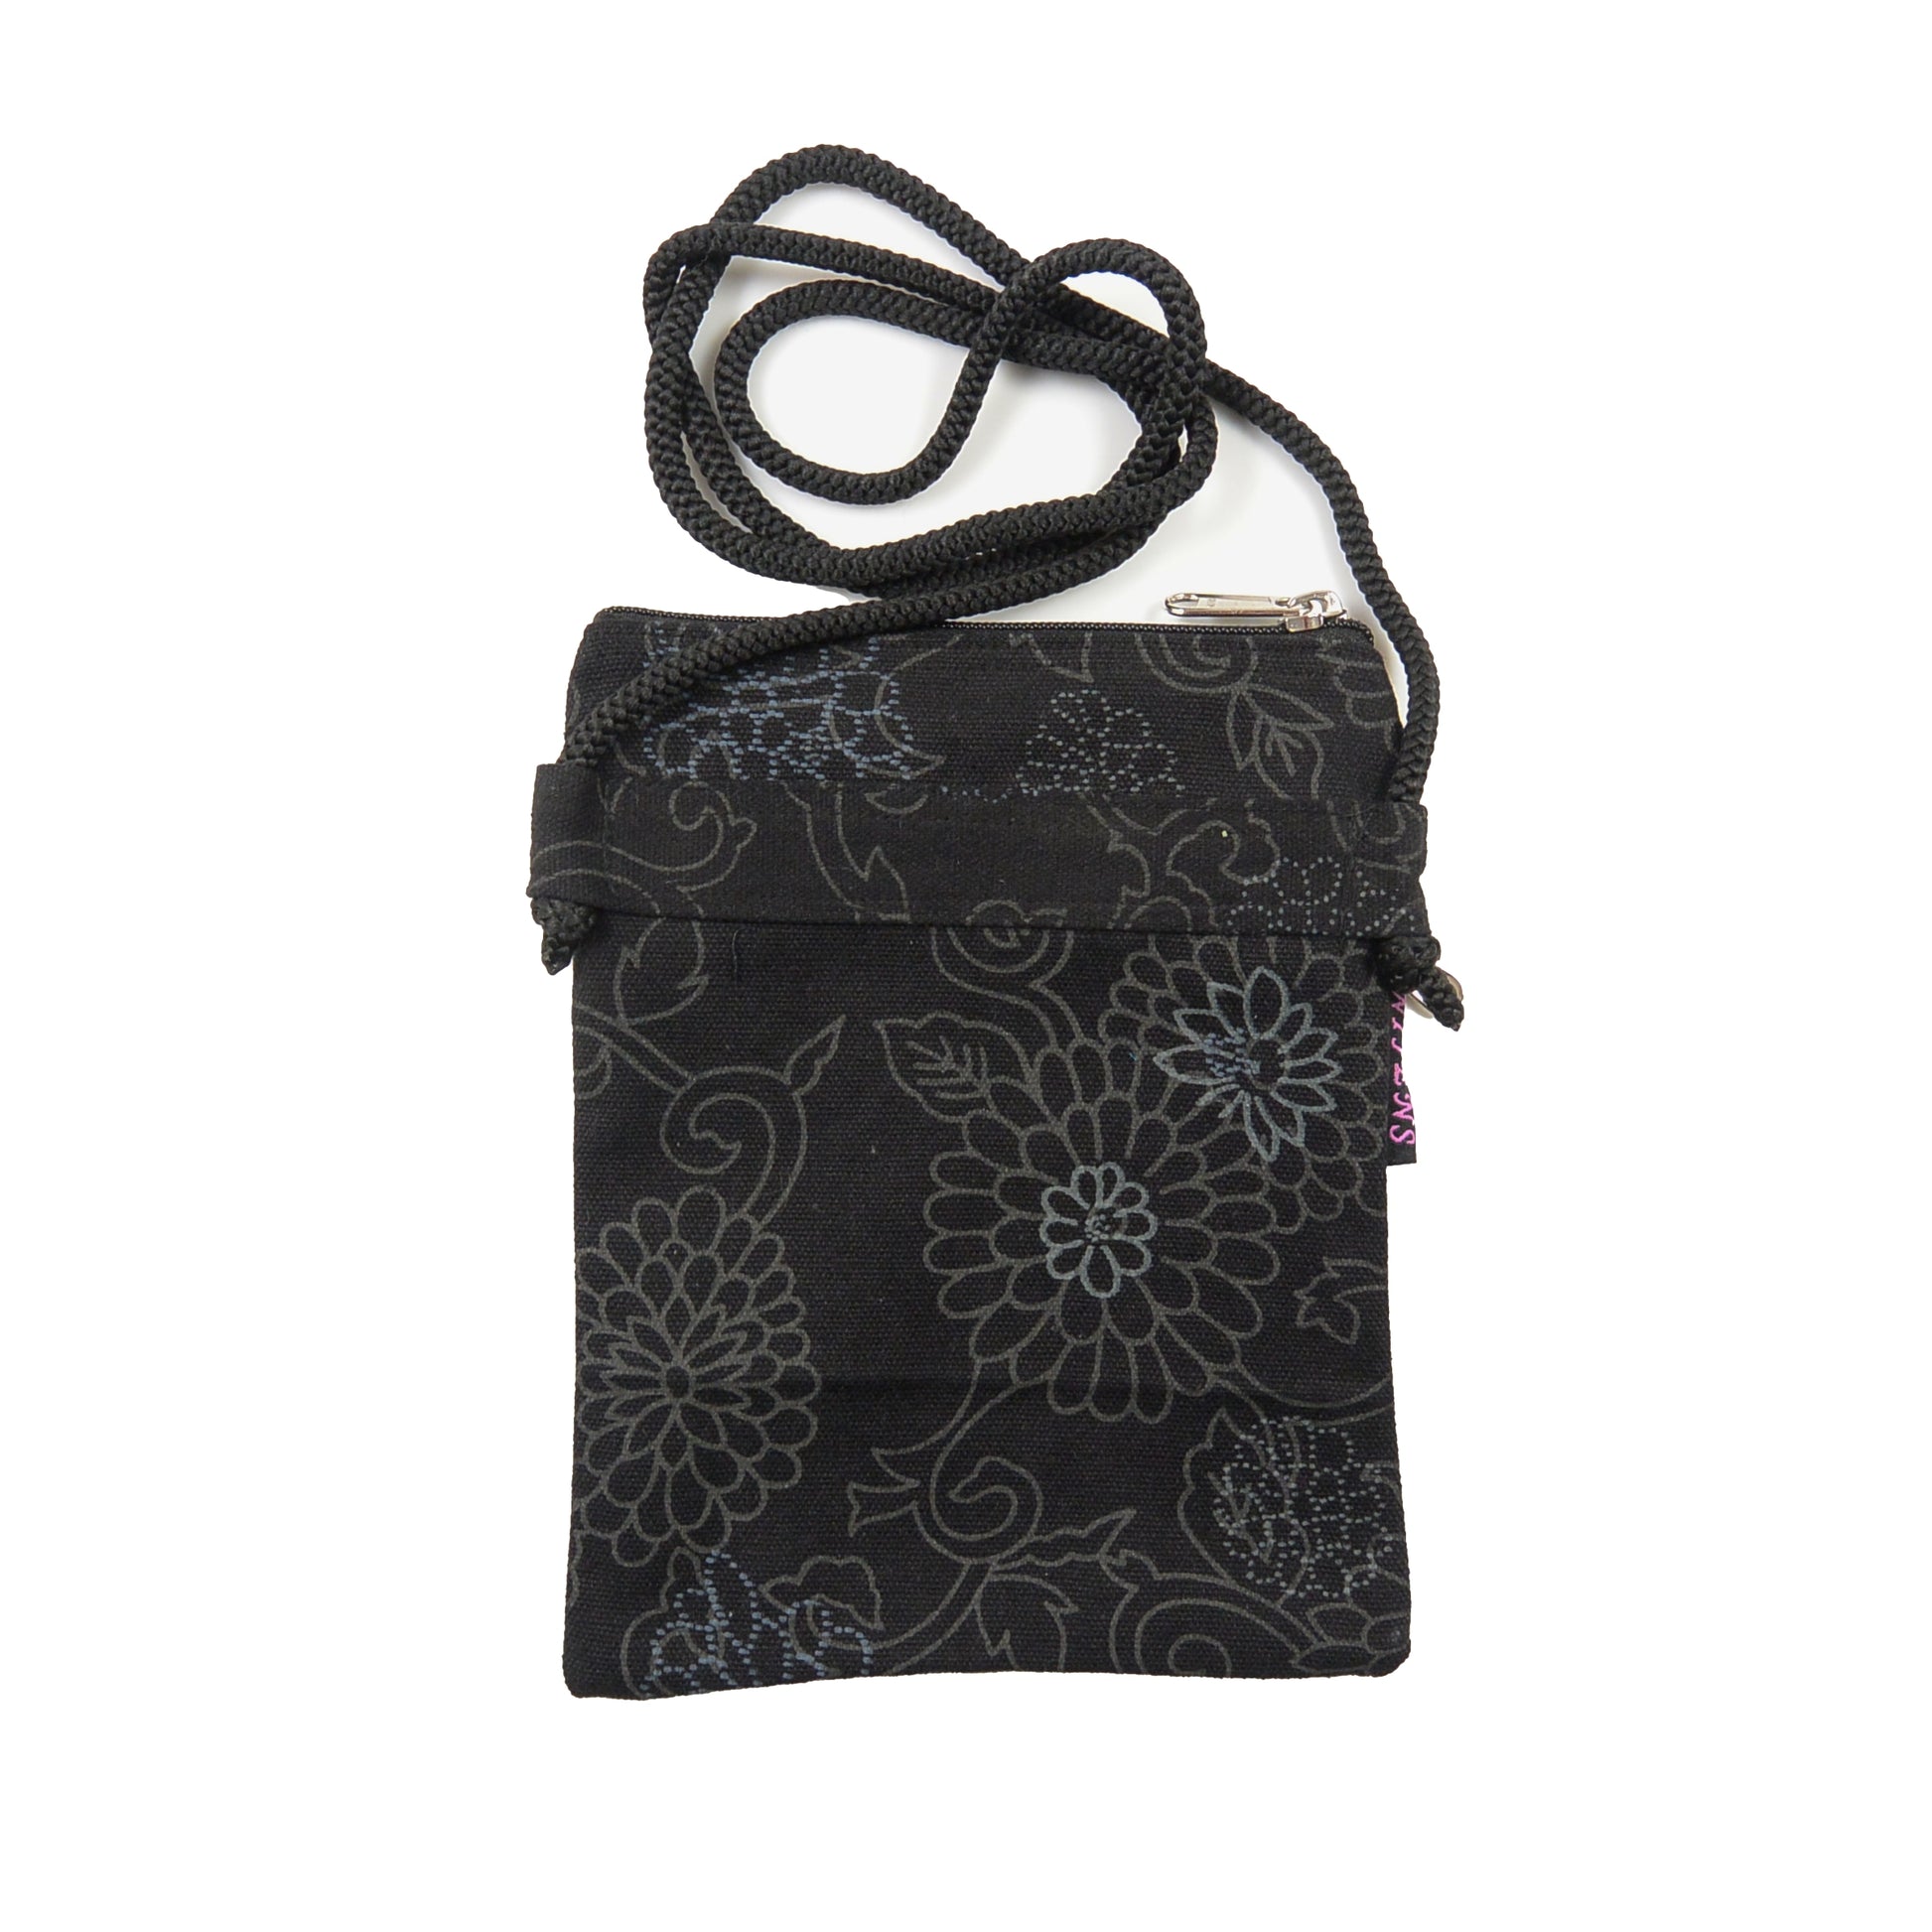 Nijens Stoff Kleine Tasche Handy-Tasche Stoff Black Flowers 3